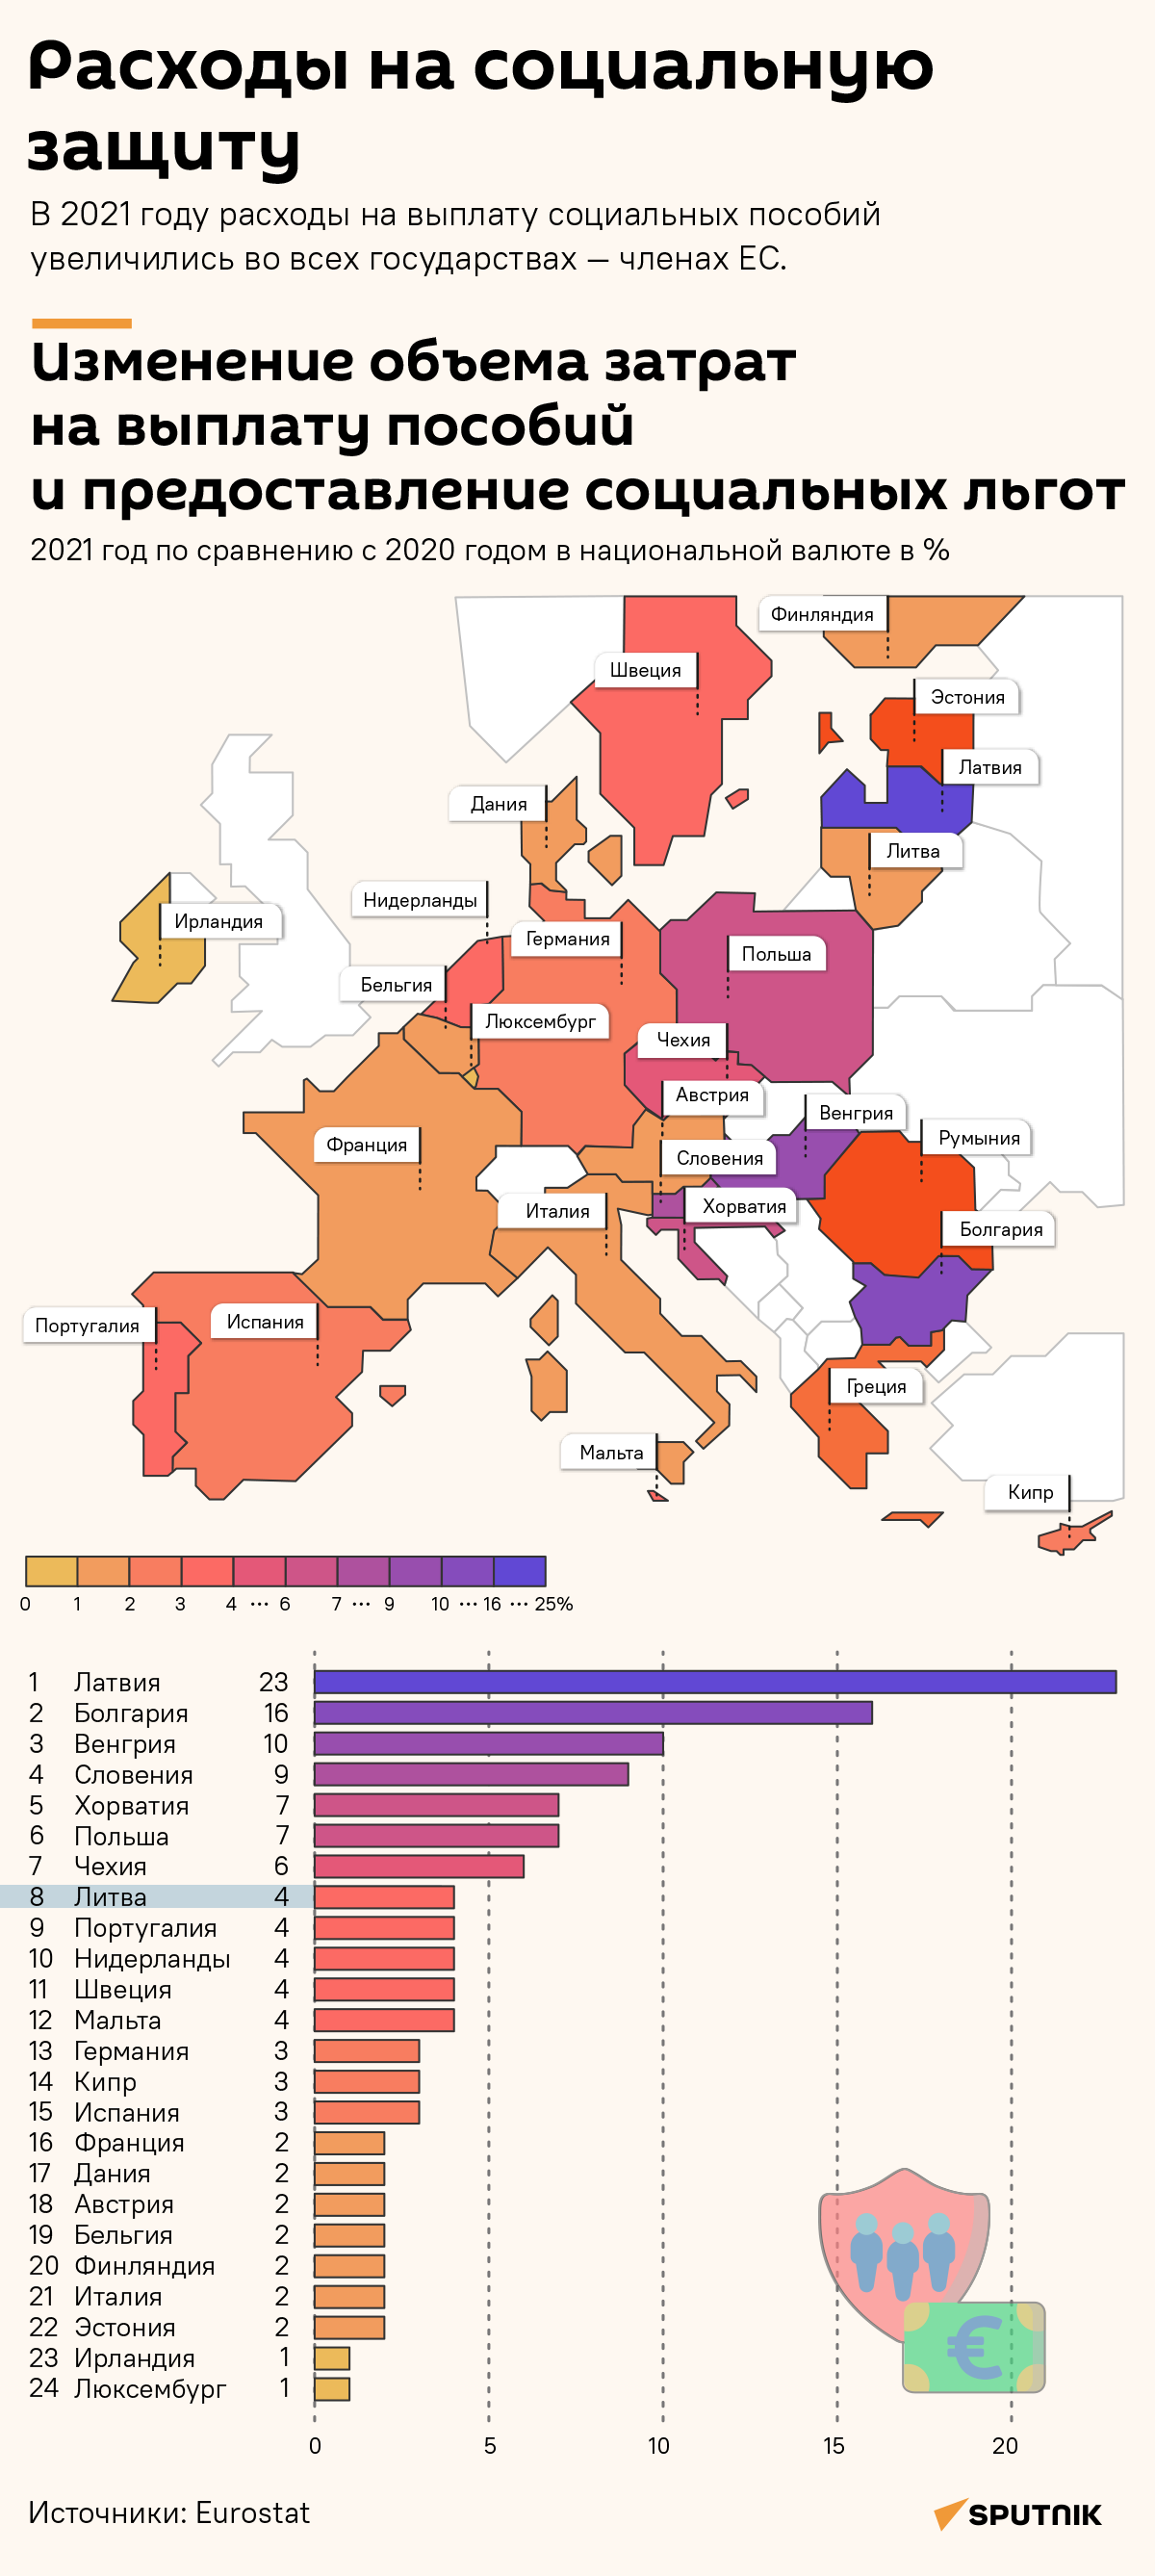 Расходы на социальную защиту в странах — членах ЕС  - Sputnik Литва